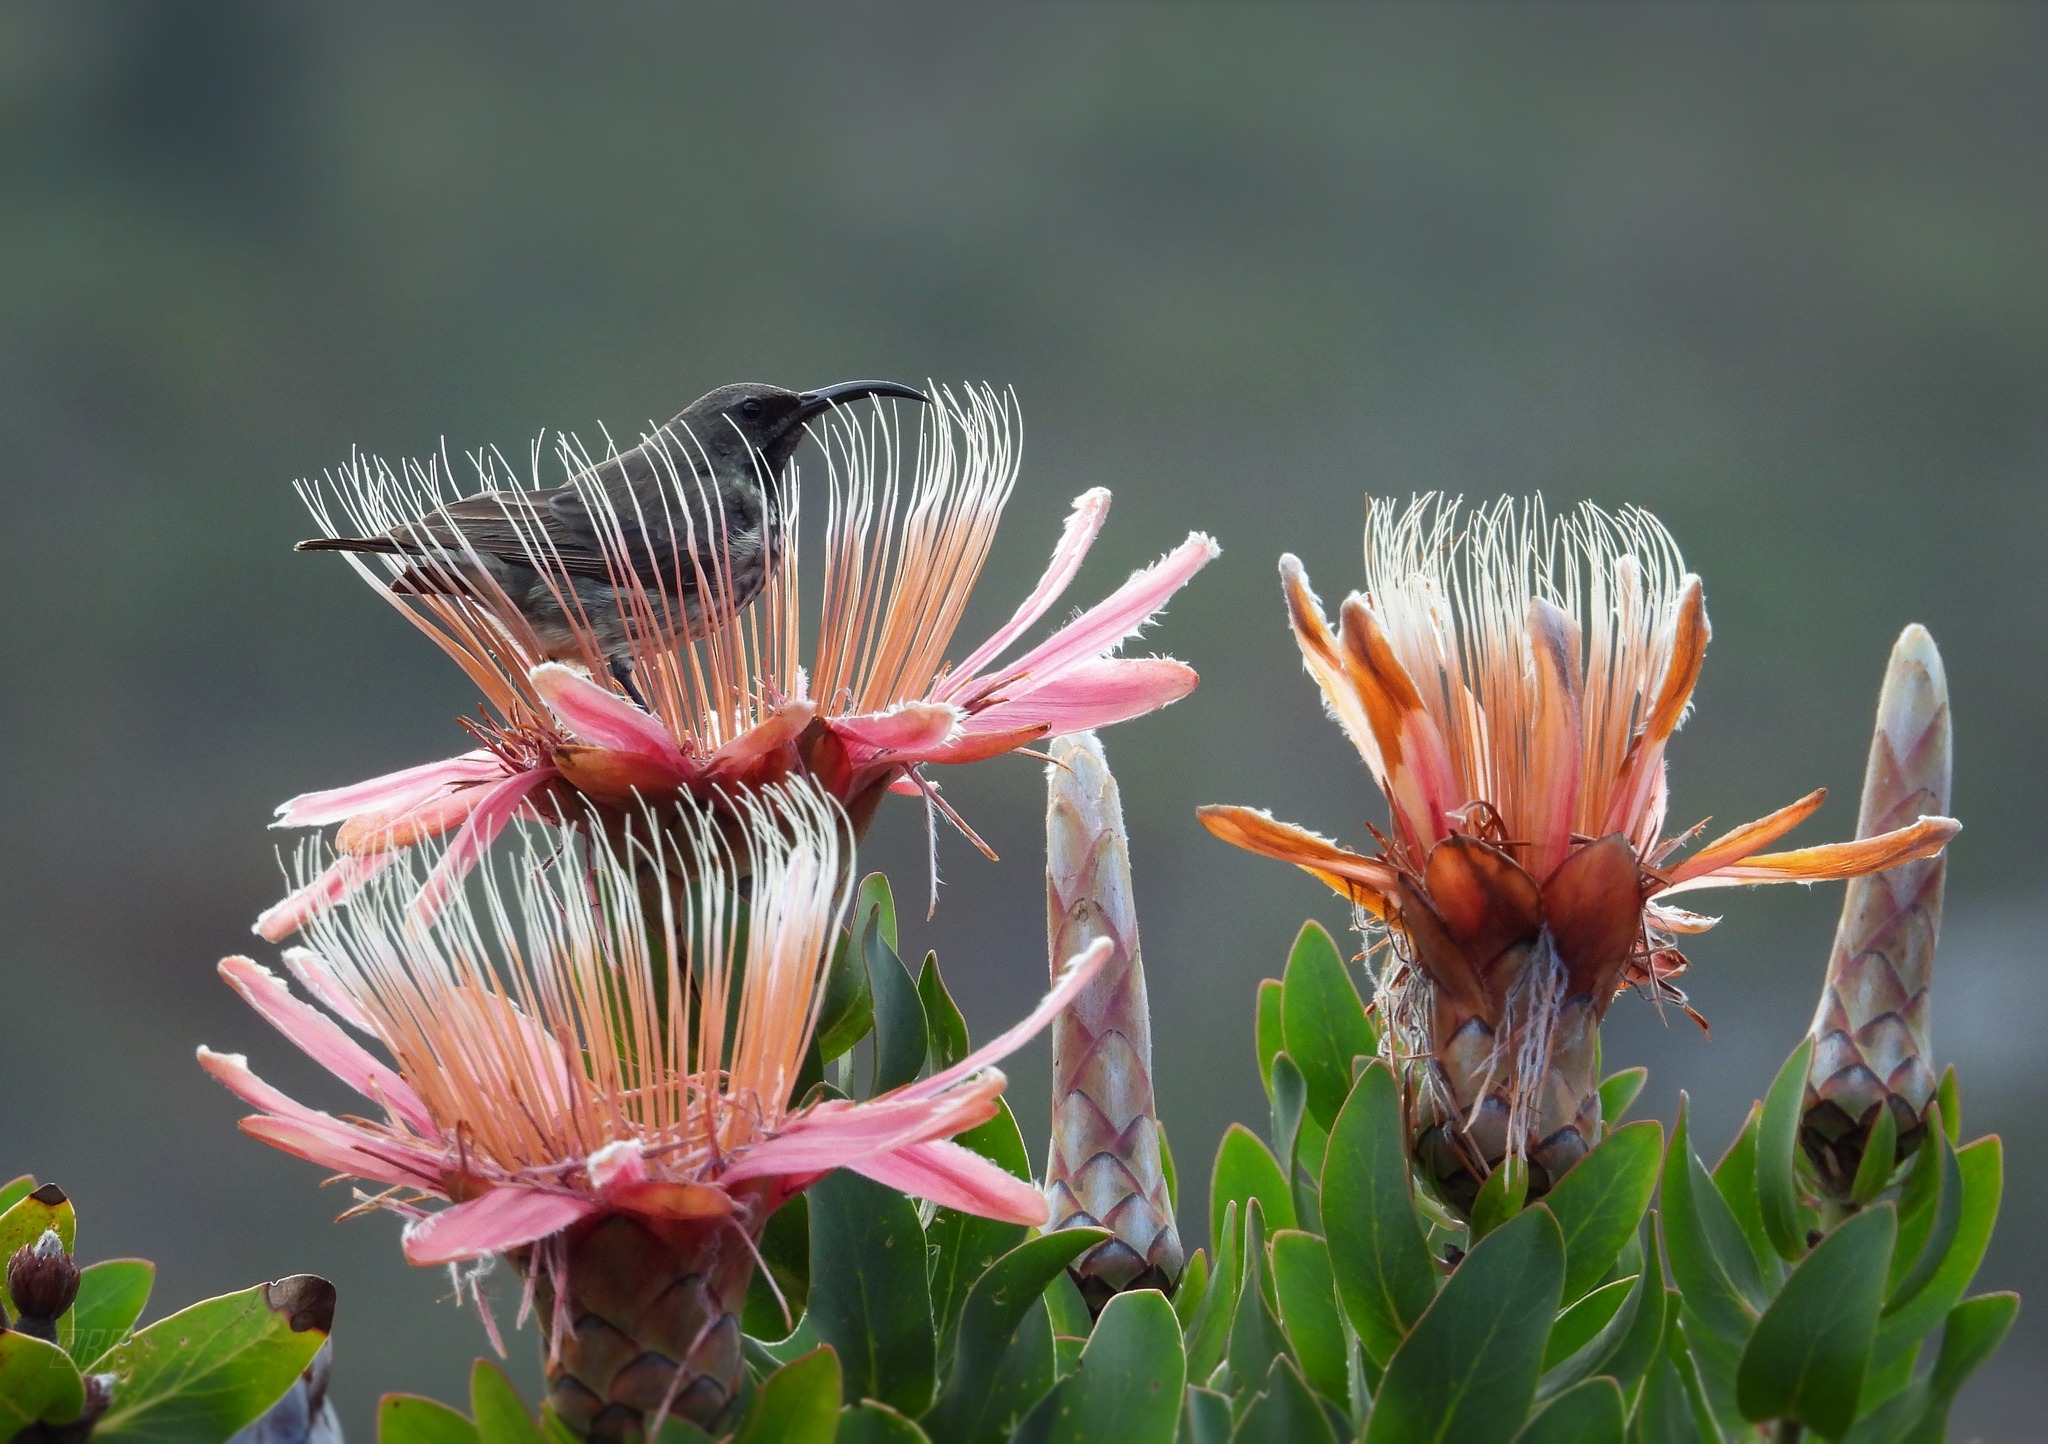 Kirstenbosch National Botanical Gardens